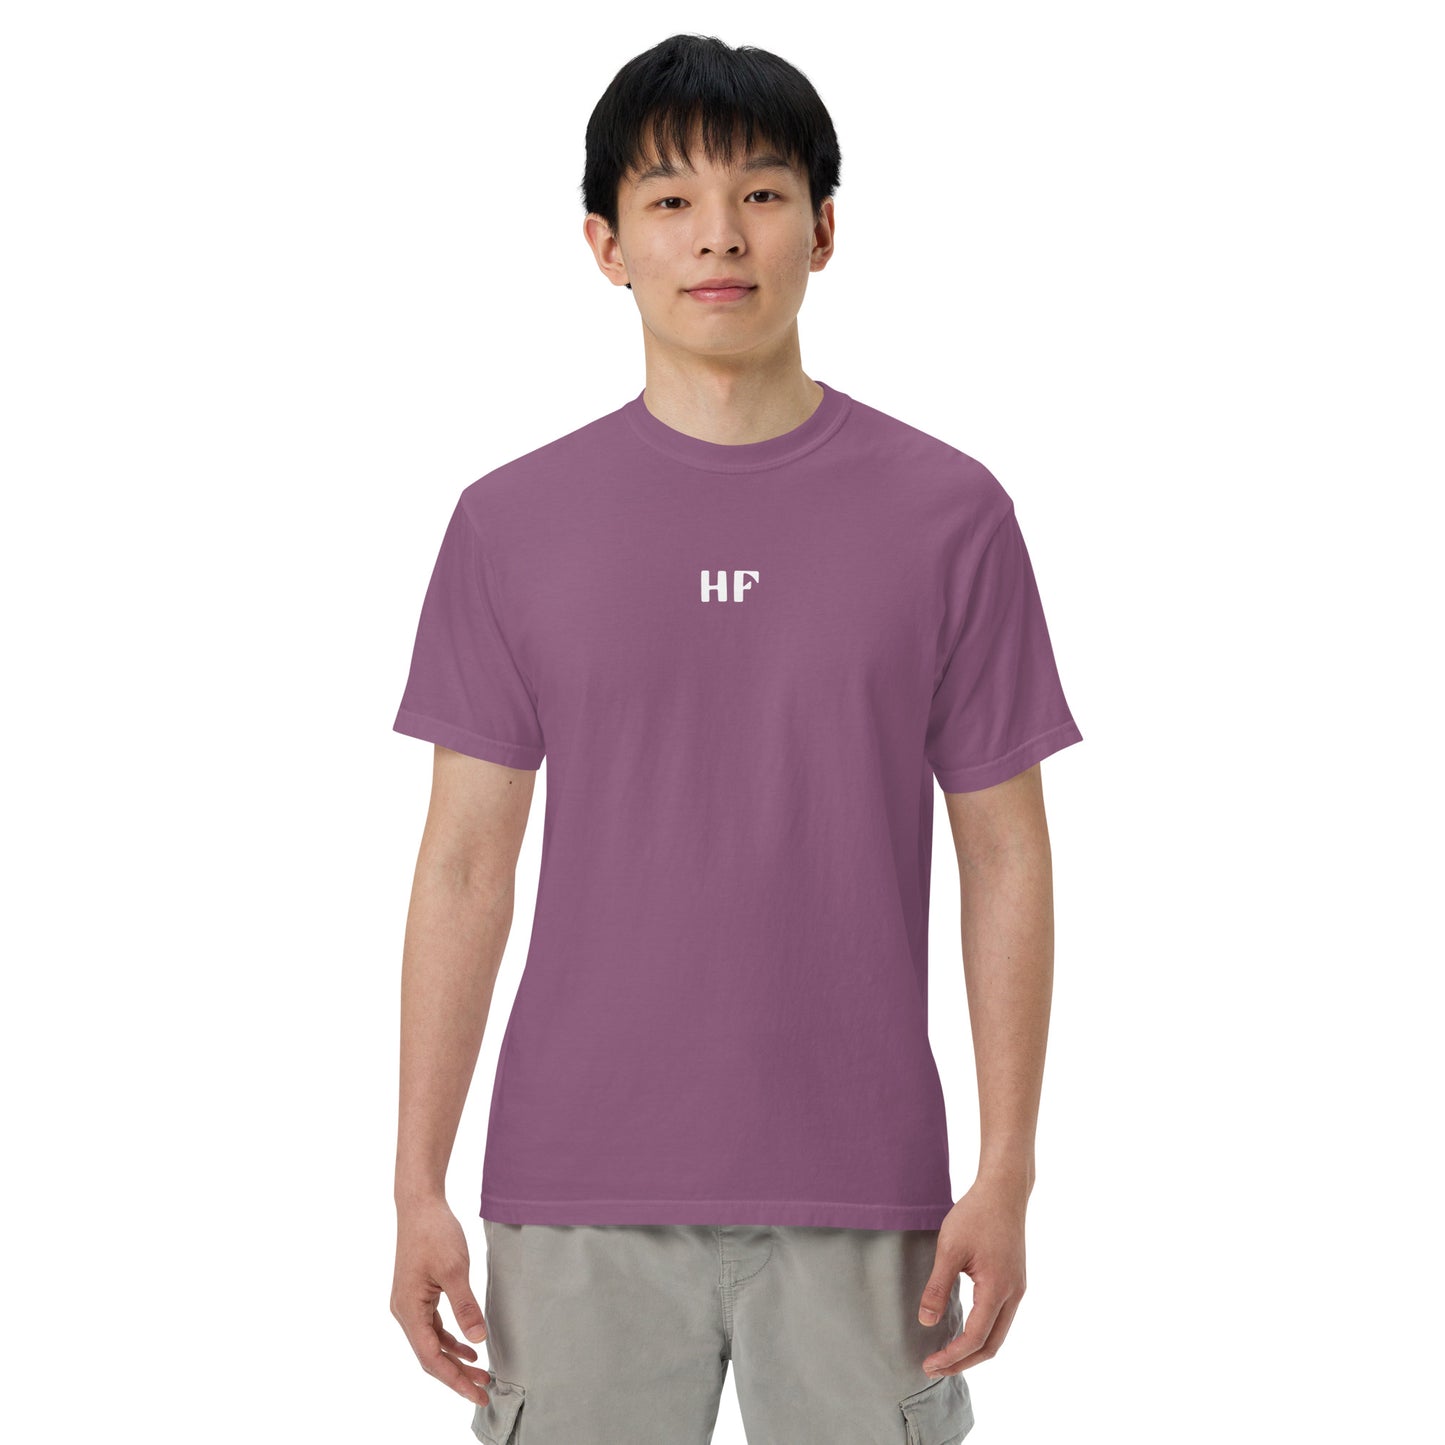 Highlands Music "I'll Follow You" Unisex garment-dyed heavyweight t-shirt